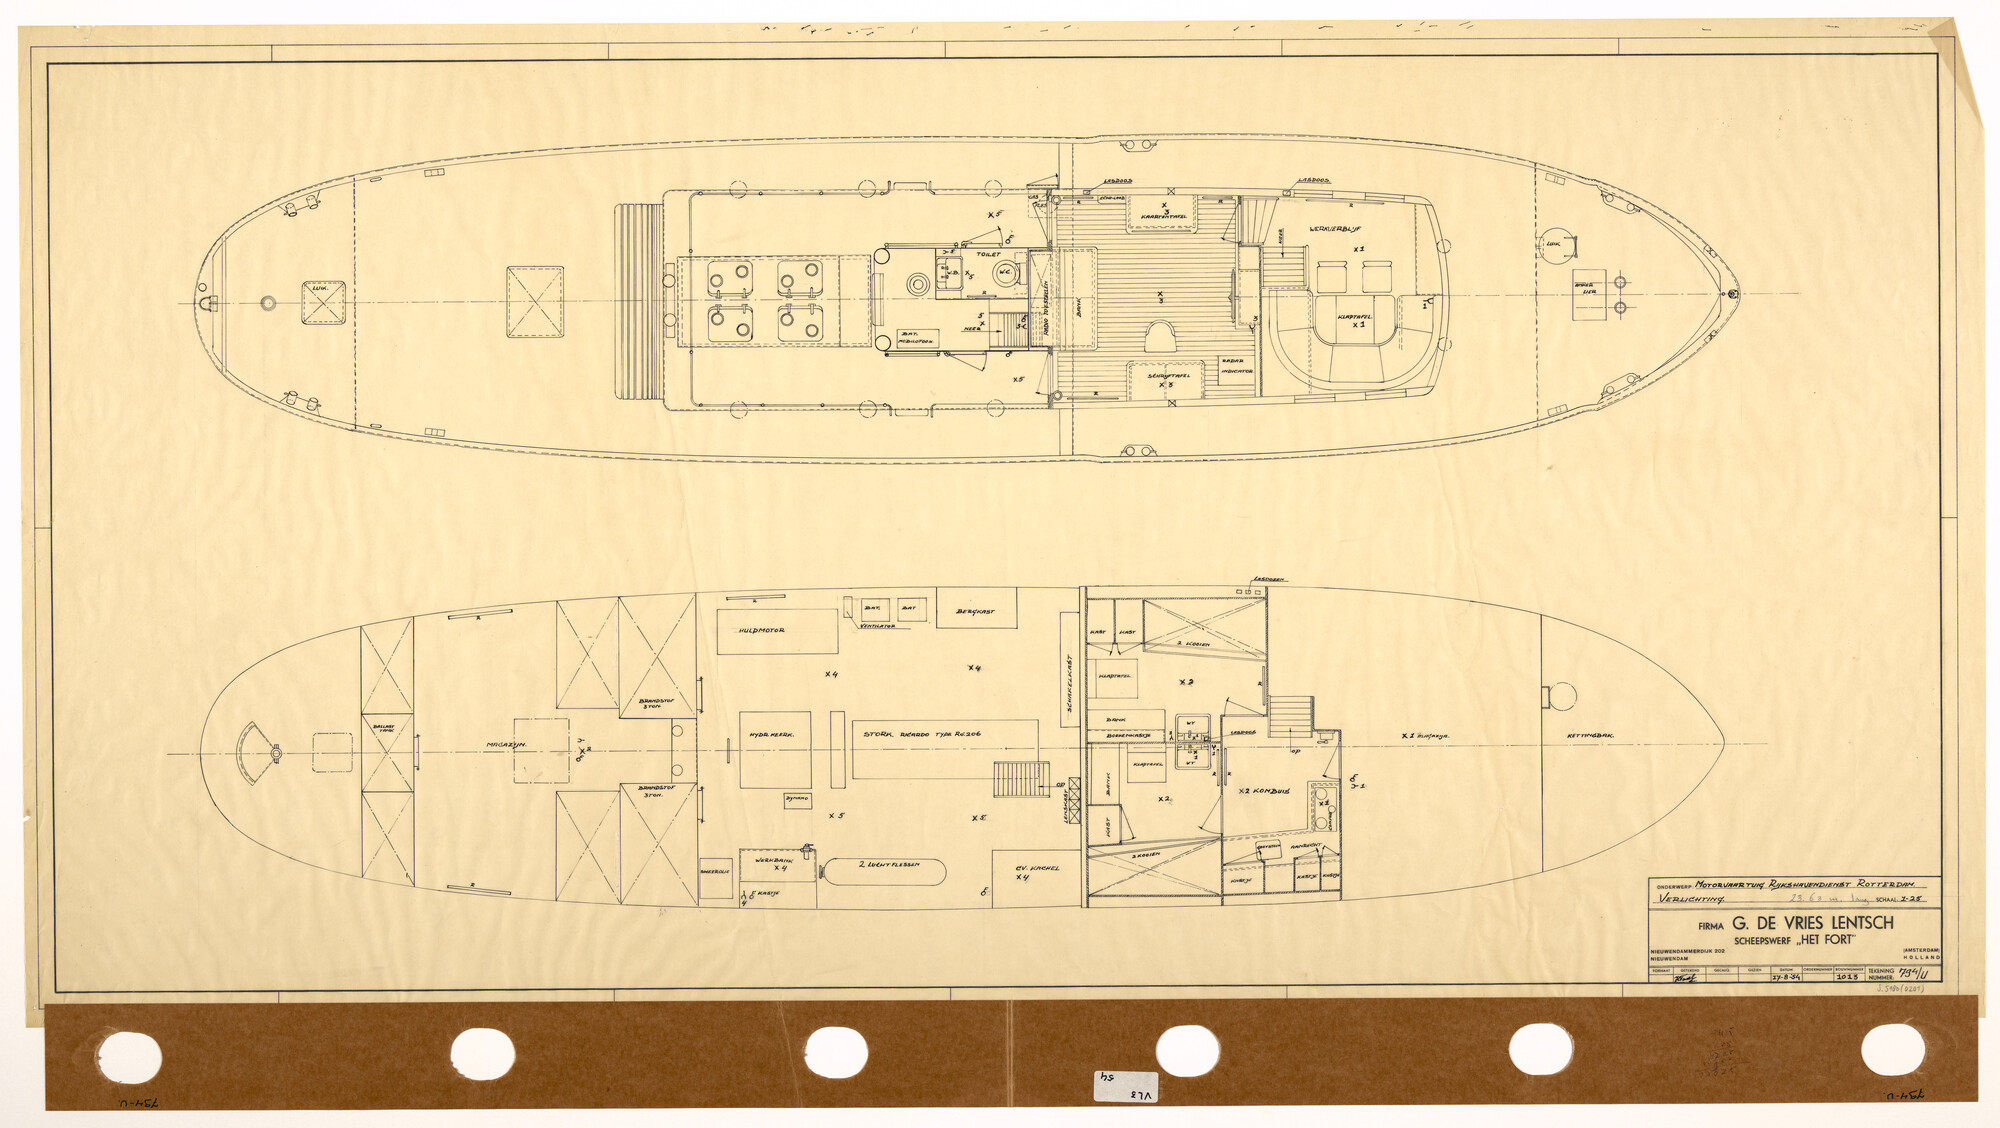 S.5180(0201); Indelingsplan van een motorvaartuig voor de Rijkshavendienst van Rotterdam; technische tekening